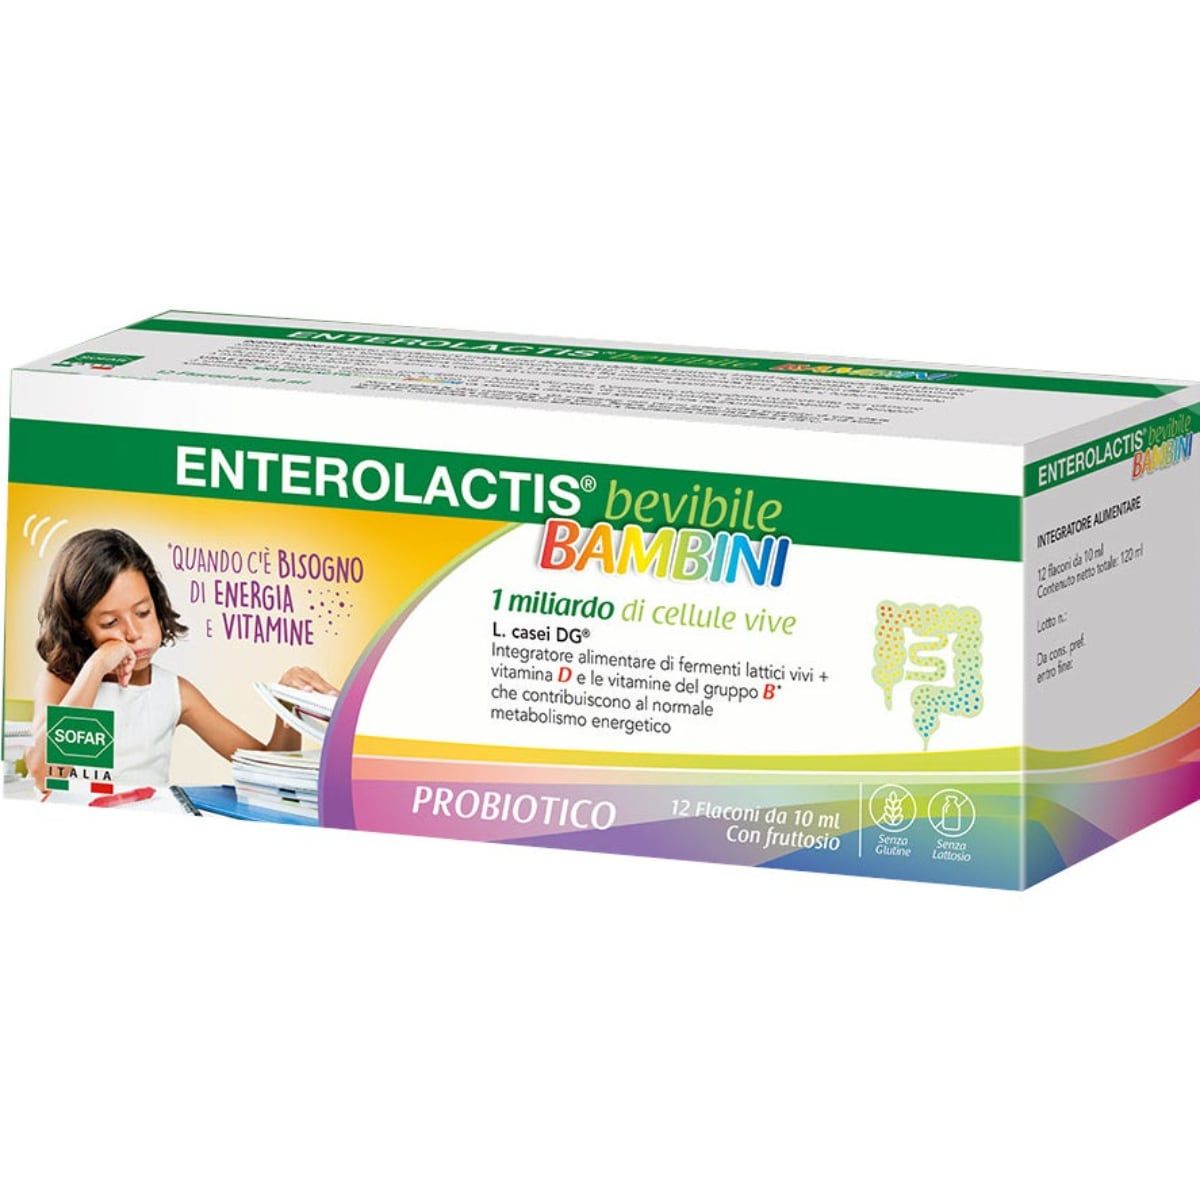 Enterolactis bevibile bambini 12 flaconcini | Farmacia Online